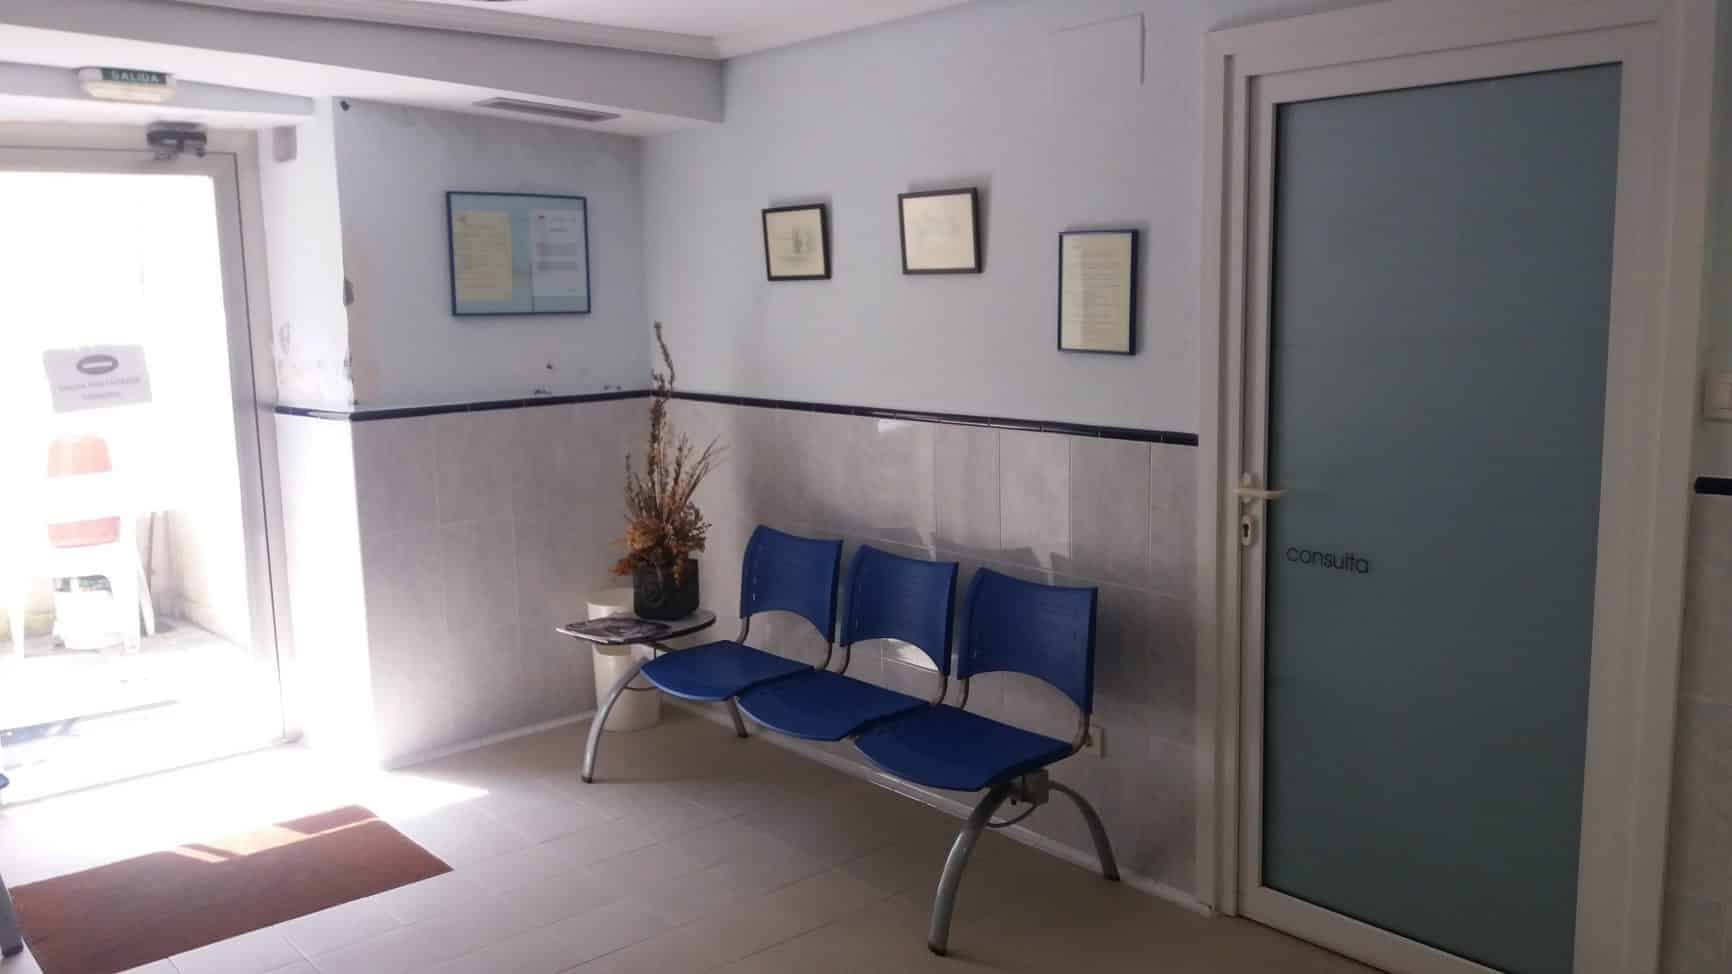 sala de espera